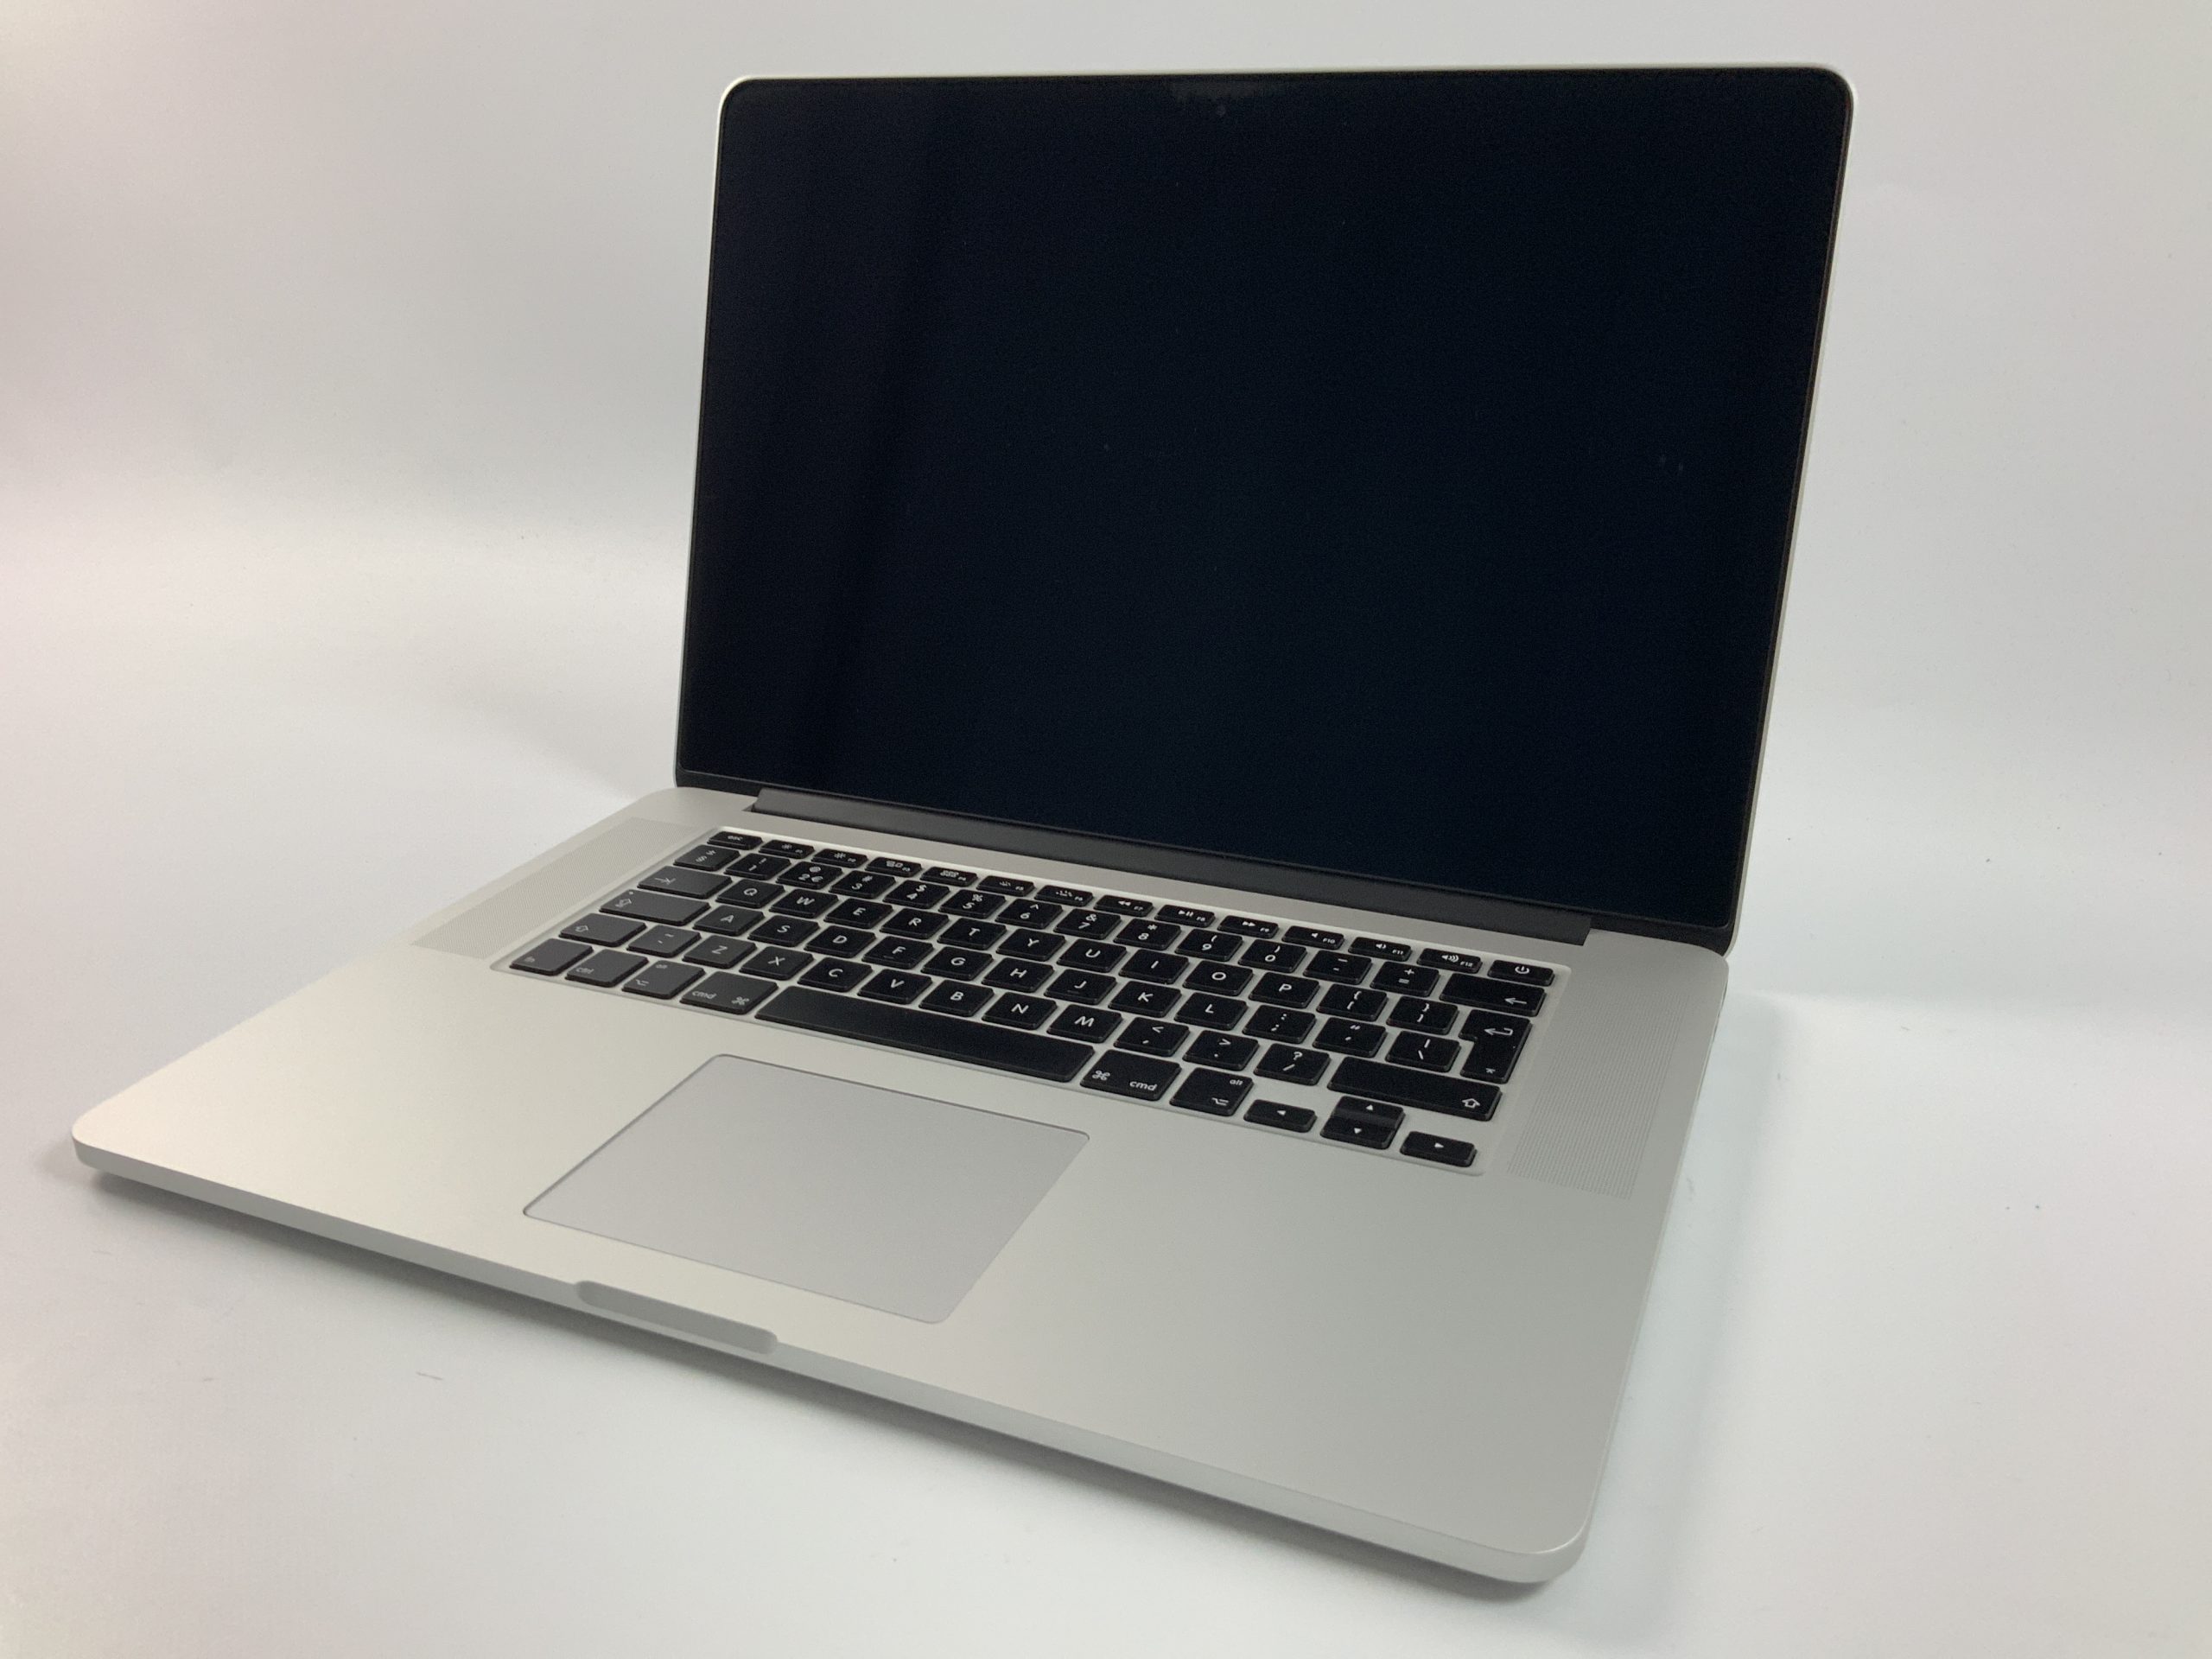 MacBook Pro Retina 15" Mid 2015 (Intel Quad-Core i7 2.2 GHz 16 GB RAM 256 GB SSD), Intel Quad-Core i7 2.2 GHz, 16 GB RAM, 256 GB SSD, immagine 1